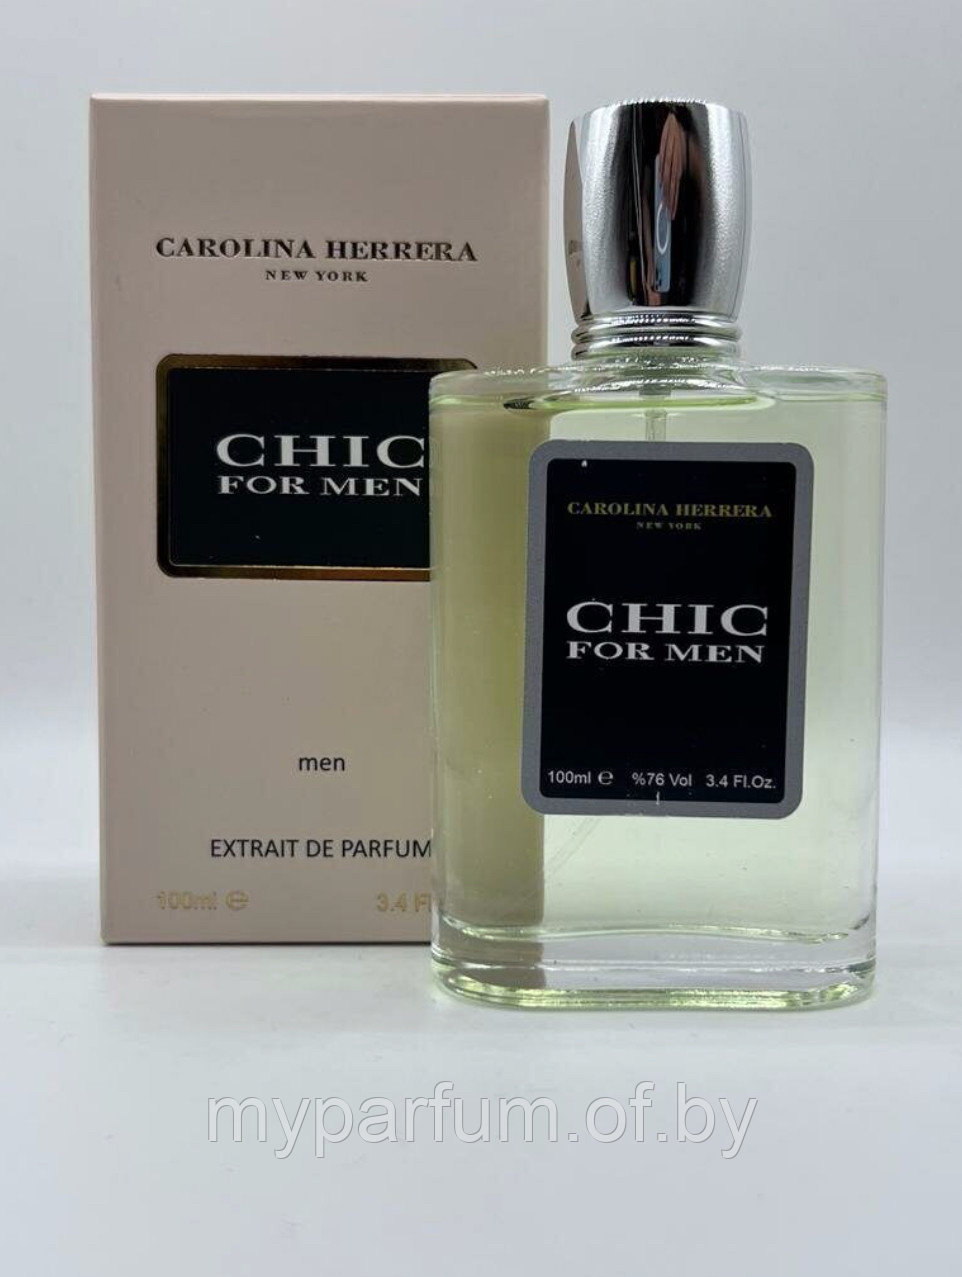 Мужская парфюмерная вода Carolina Herrera Chic for men Extrait de Parfum100ml